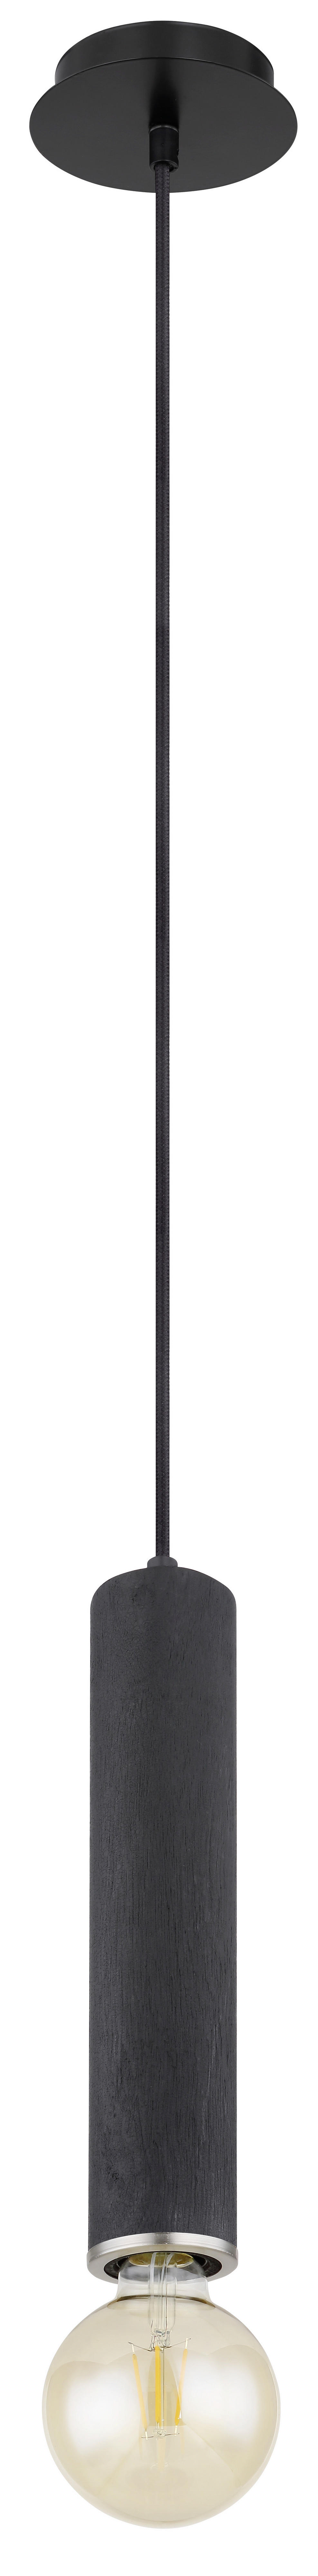 HÄNGELEUCHTE Marion 12/160 cm   - Schwarz/Nickelfarben, Basics, Holz/Metall (12/160cm) - Globo